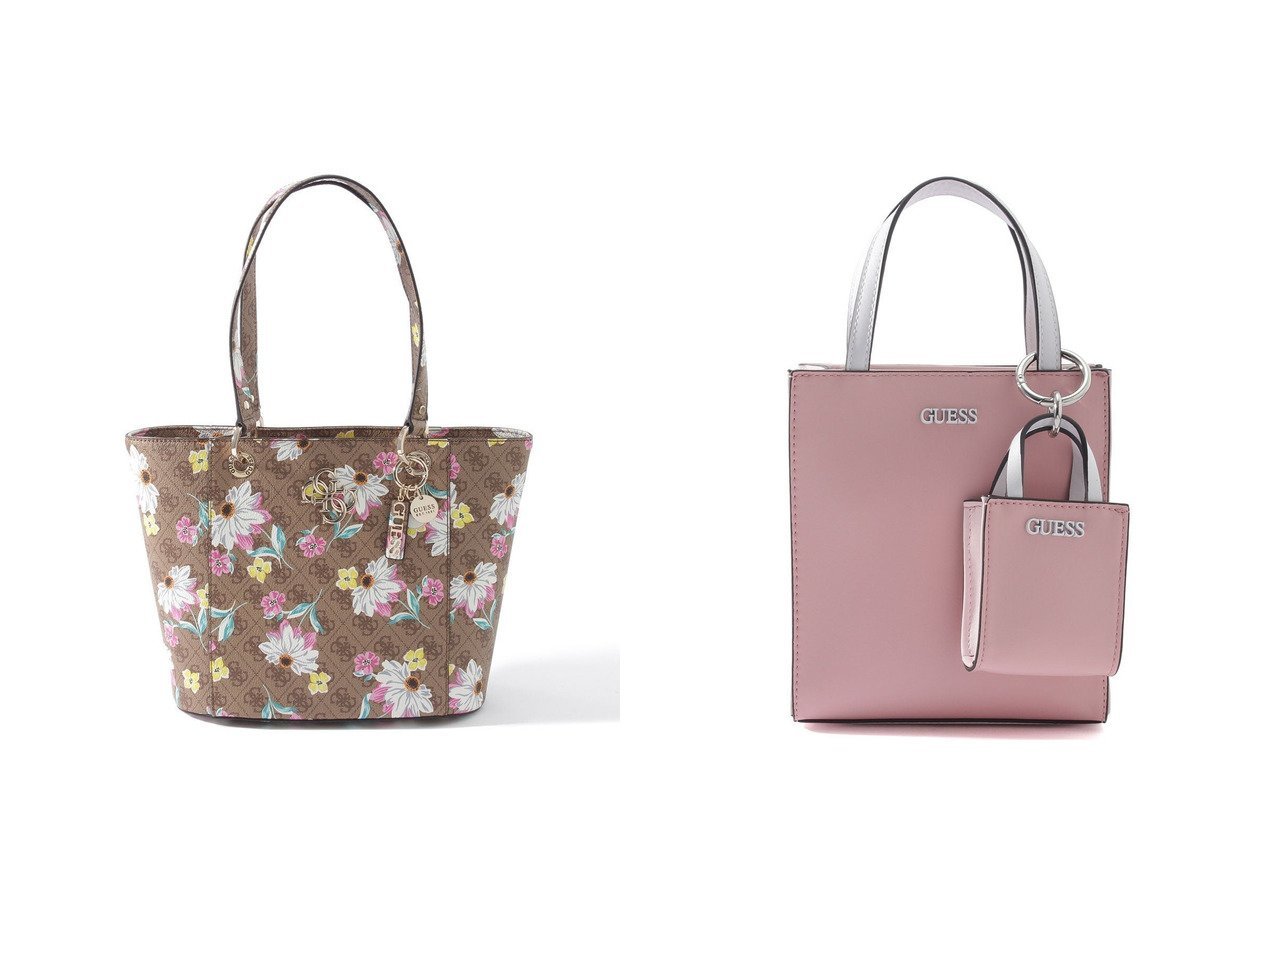 【GUESS/ゲス】のPICNIC Mini Tote&NOELLE Floral 4G Logo Small Elite Tote バッグ・鞄のおすすめ！人気、トレンド・レディースファッションの通販 おすすめで人気の流行・トレンド、ファッションの通販商品 メンズファッション・キッズファッション・インテリア・家具・レディースファッション・服の通販 founy(ファニー) https://founy.com/ ファッション Fashion レディースファッション WOMEN バッグ Bag 2021年 2021 2021 春夏 S/S SS Spring/Summer 2021 S/S 春夏 SS Spring/Summer ショルダー シンプル ポケット 春 Spring 財布 |ID:crp329100000024783